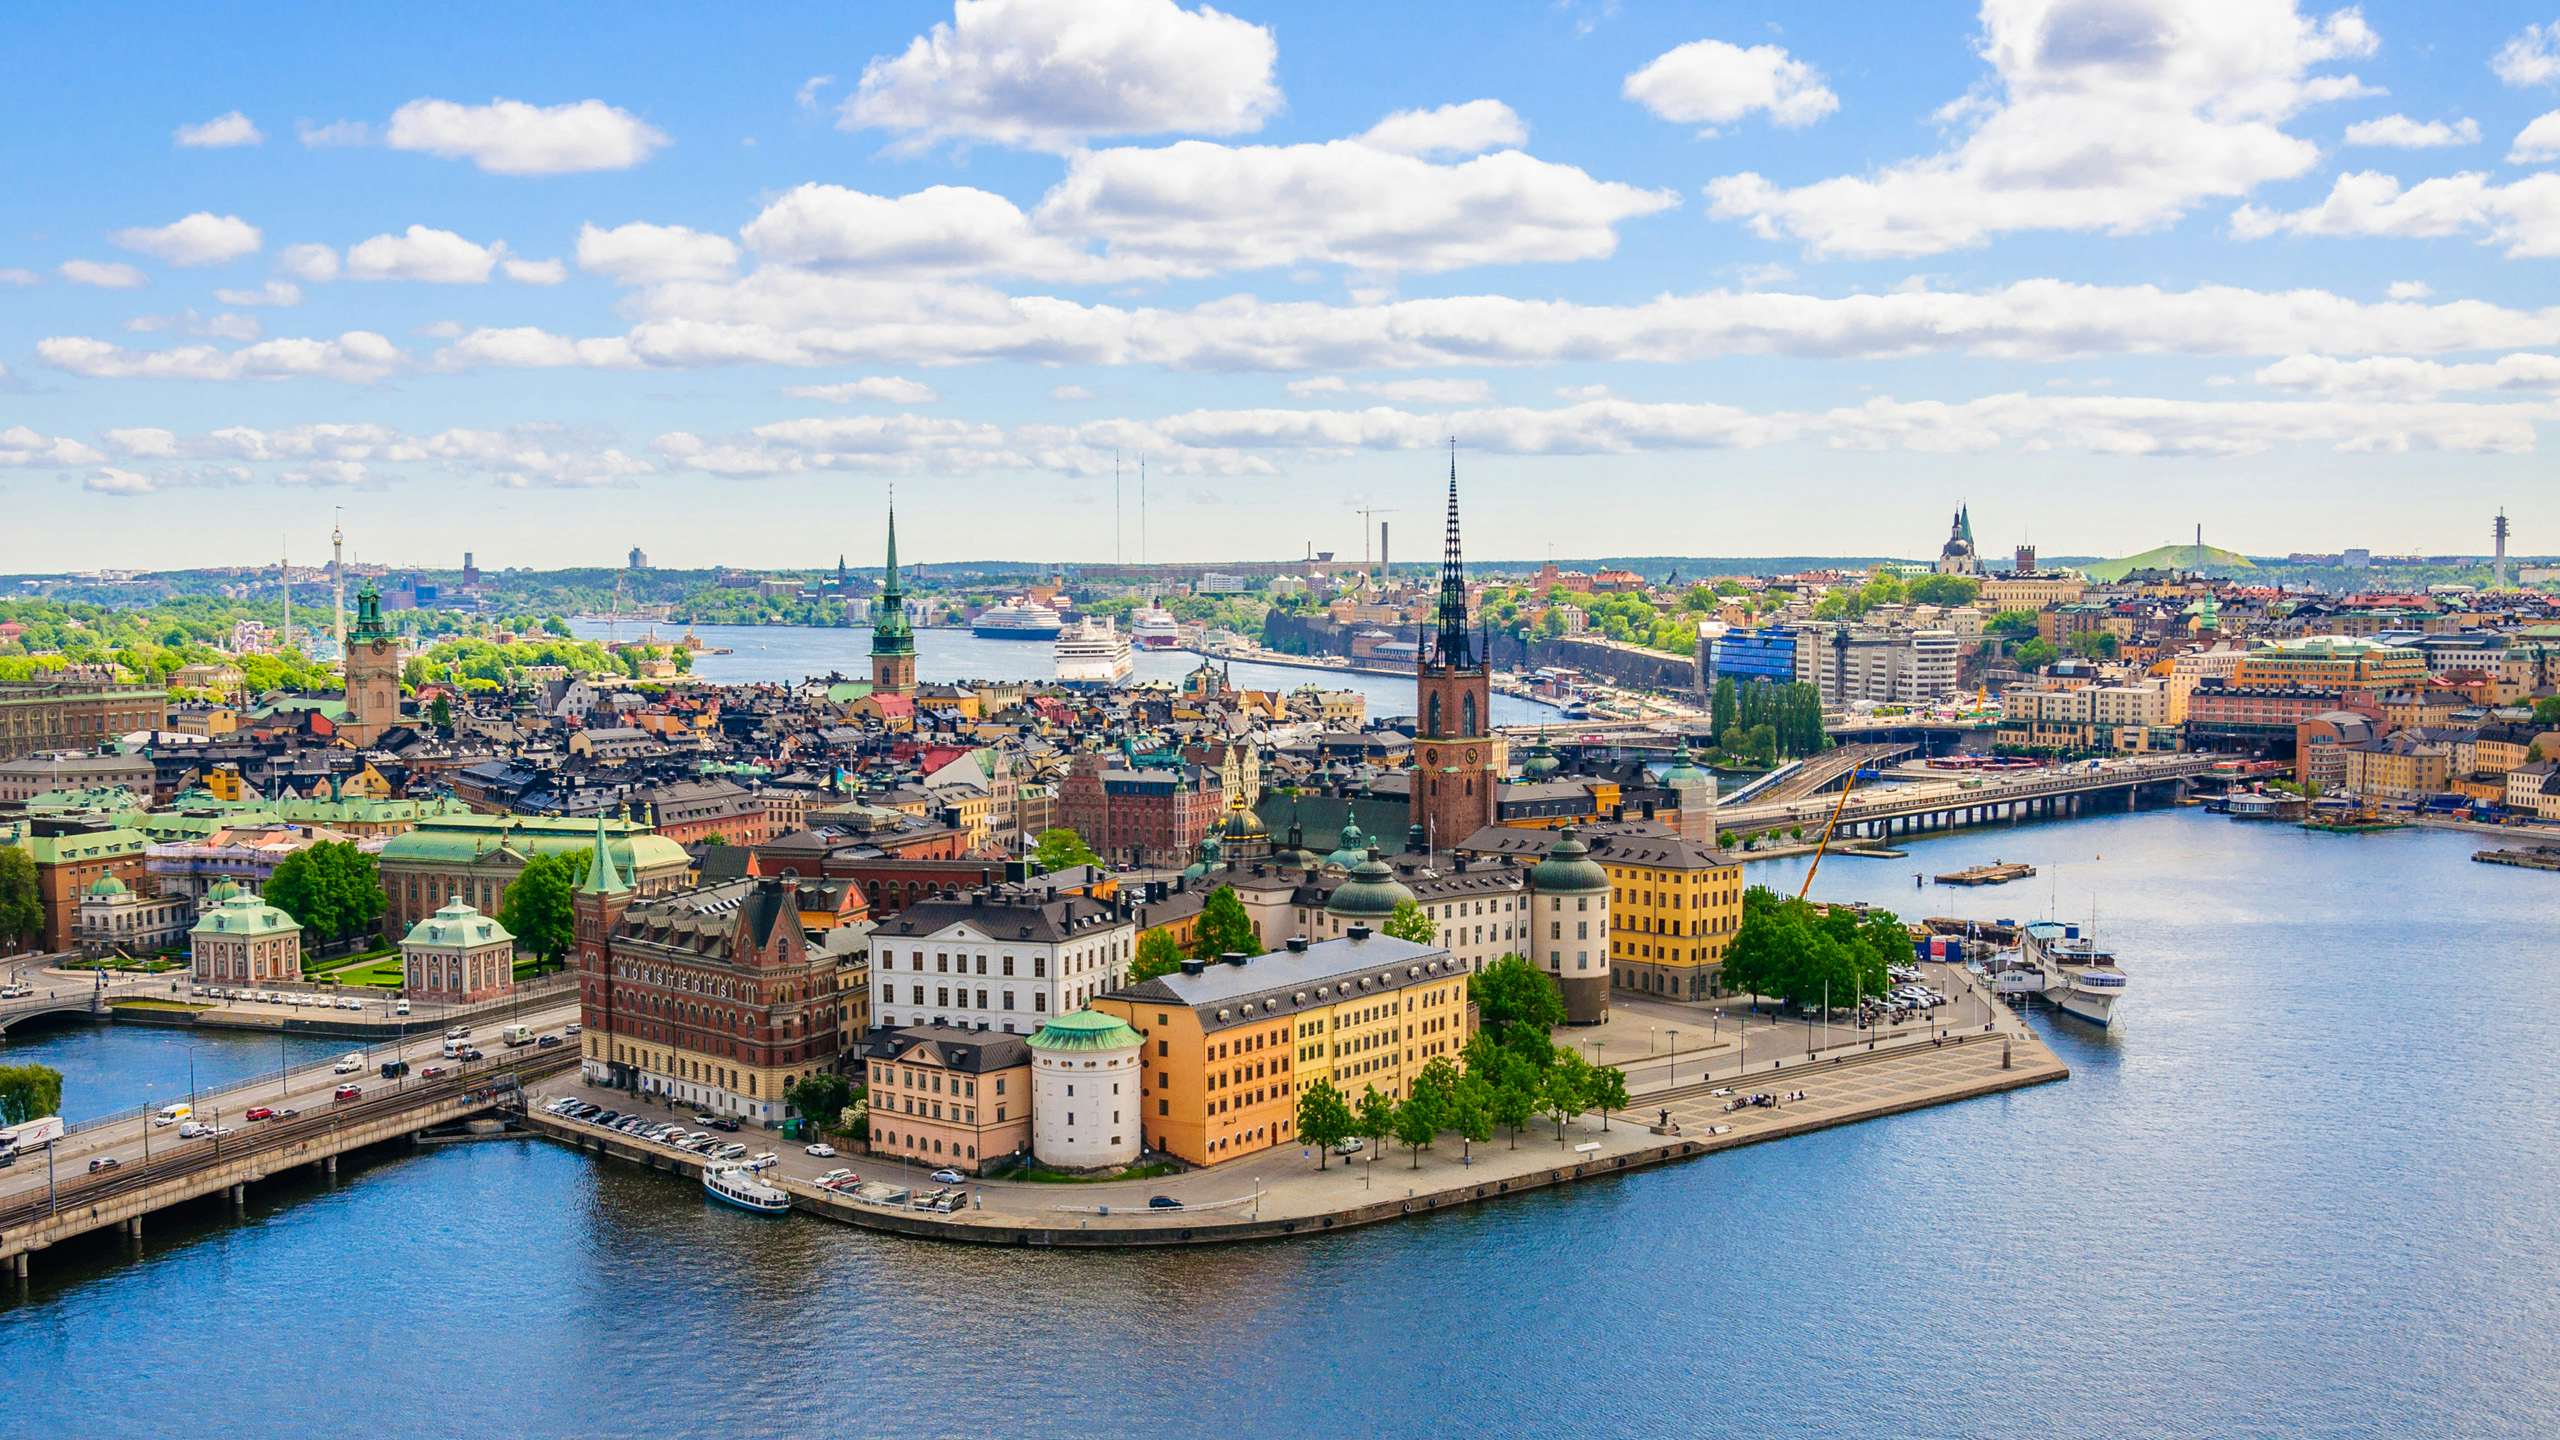 Scandinavia Superyacht Charter - Scandinavian city with buildings overlooking the water